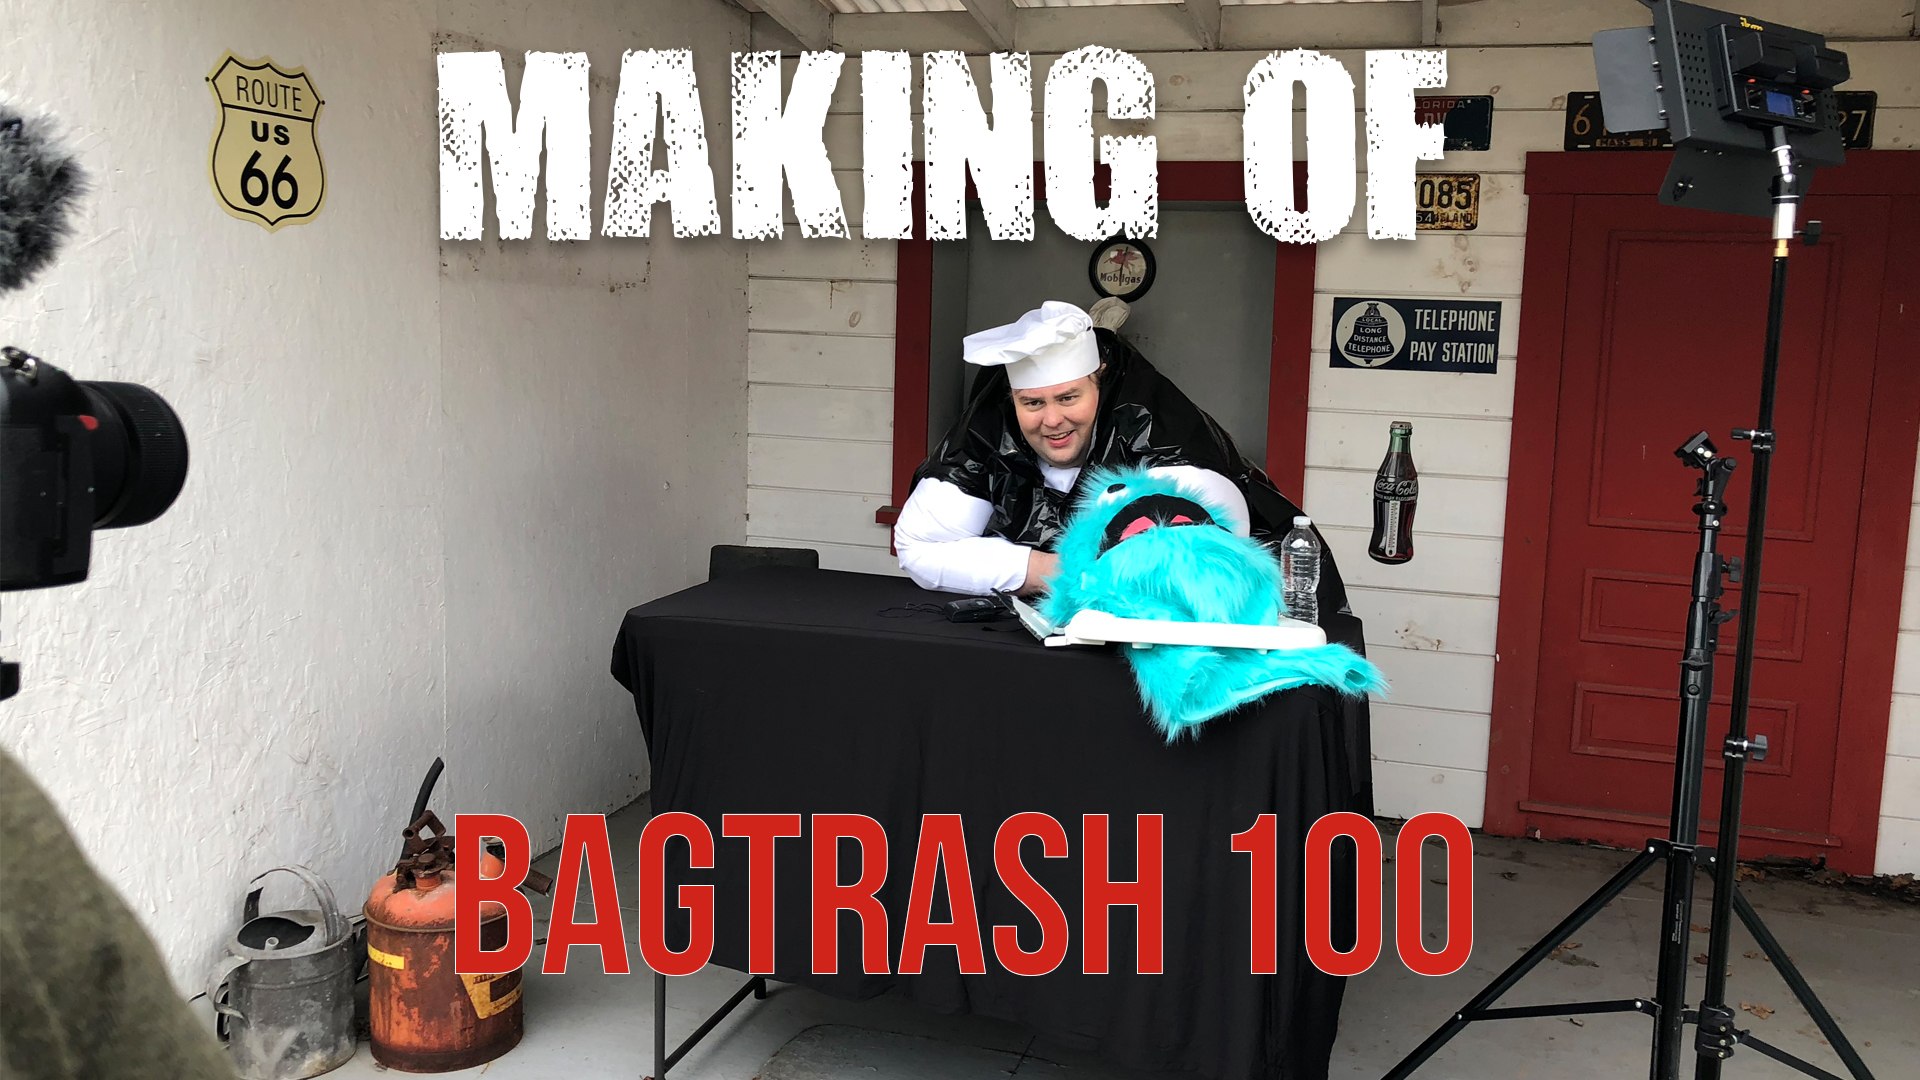 BagTrash 100 Bloopers and Blog